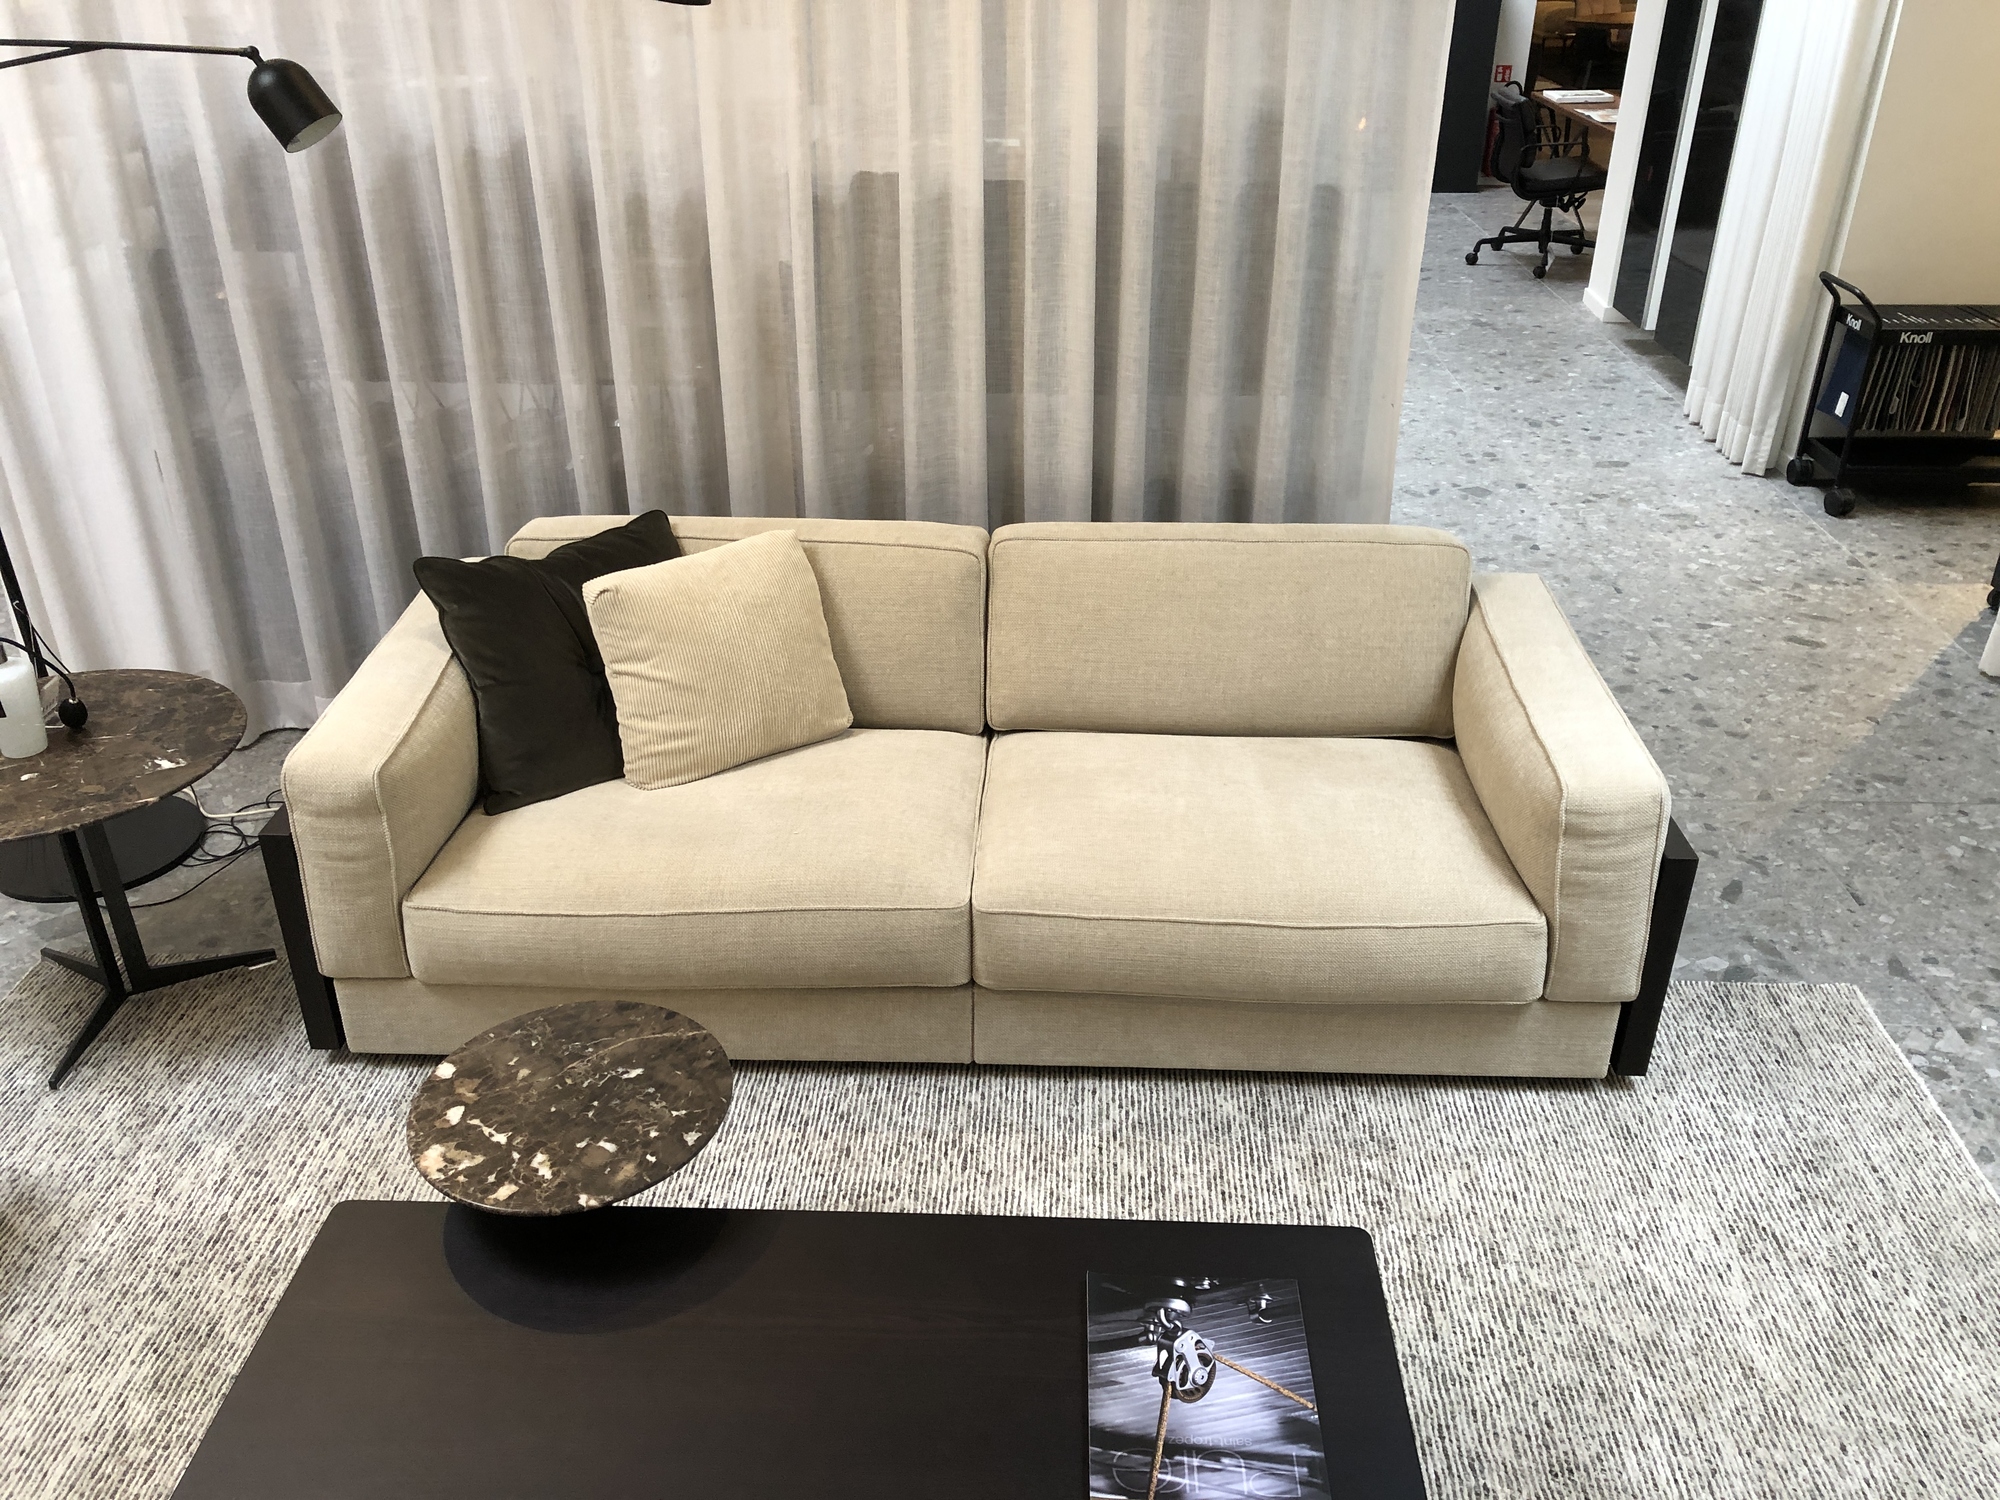 Knoll-Gould sofa